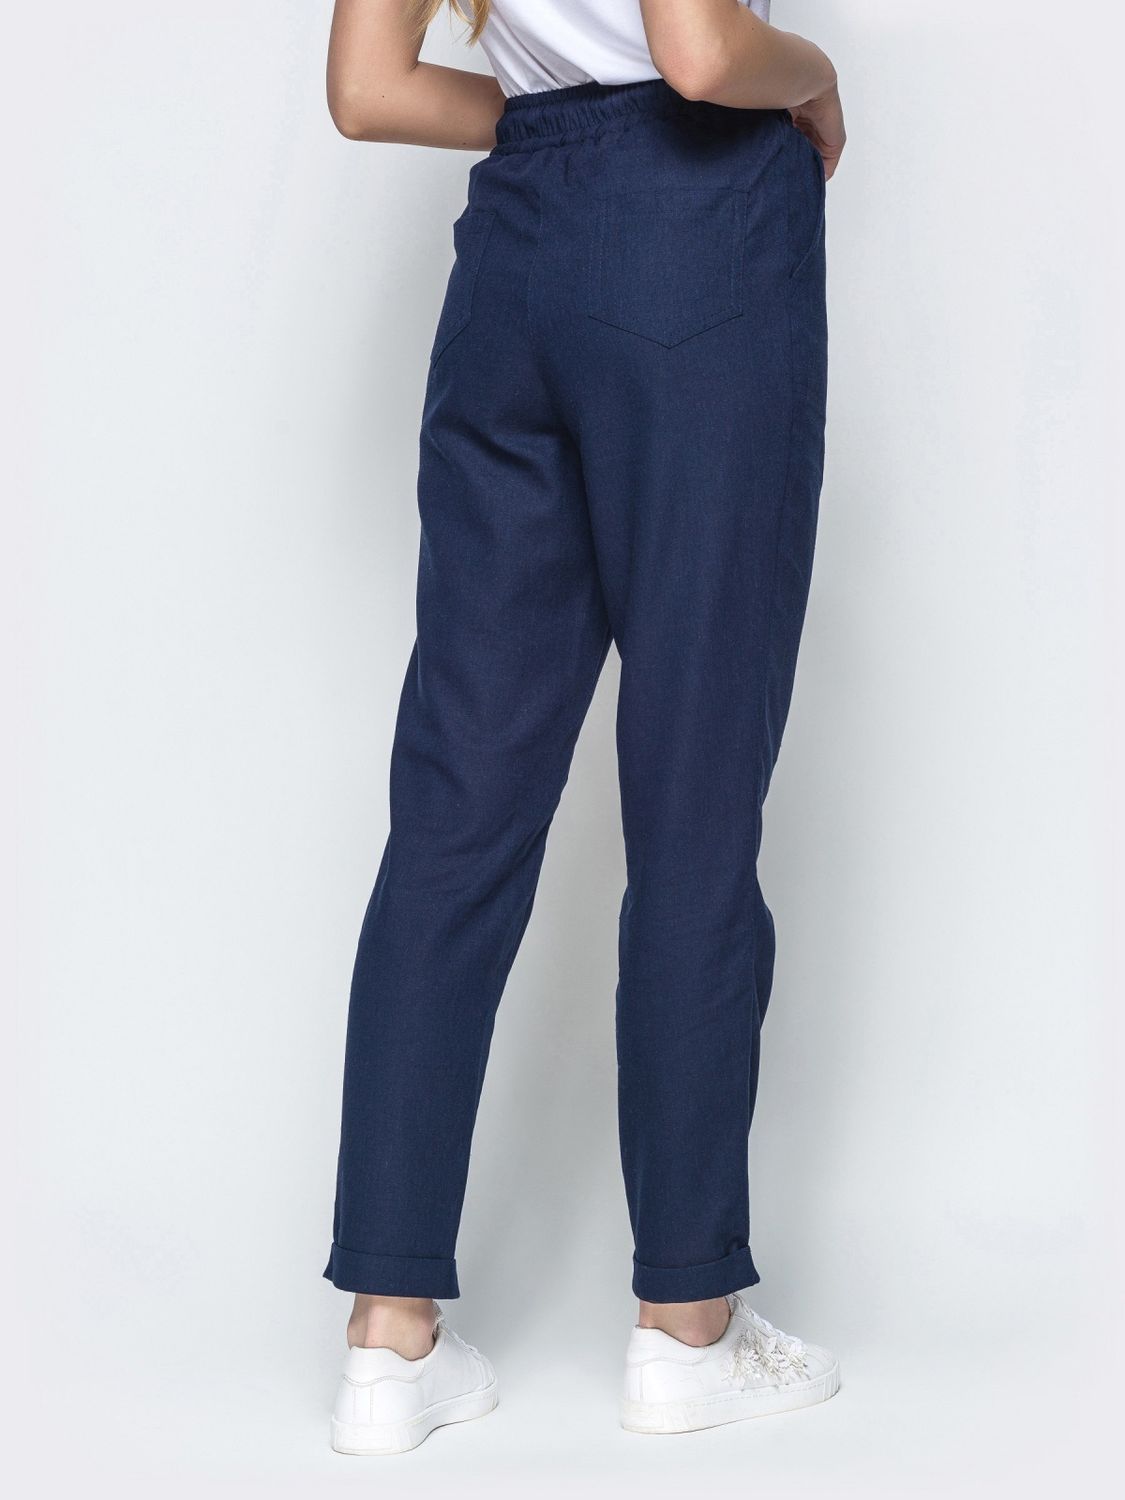 Льняные брюки на лето синего цвета - фото